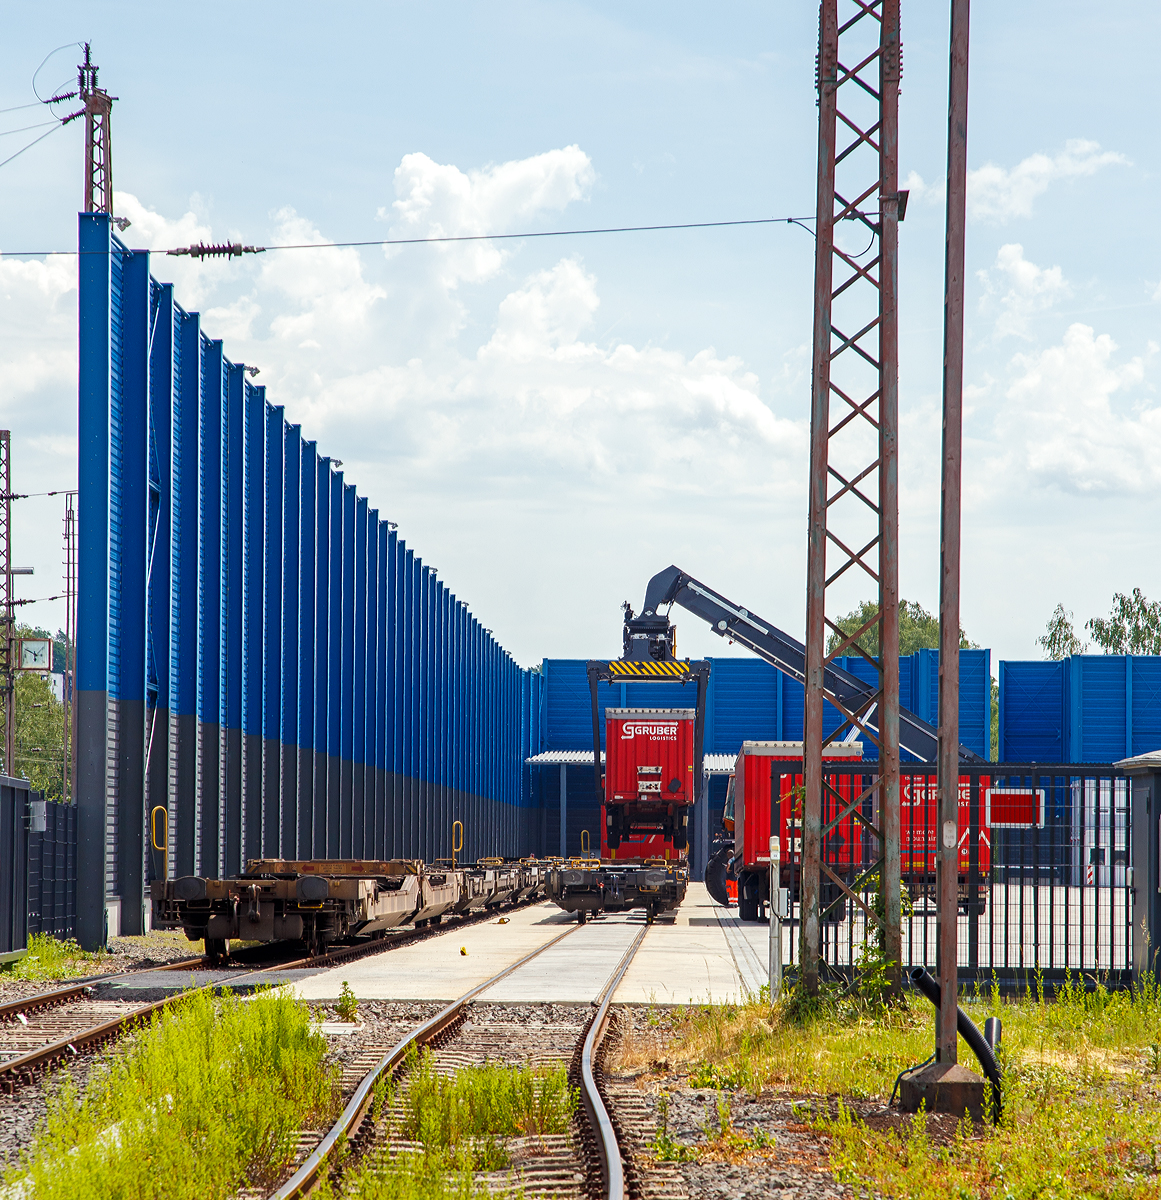 Sdwestfalen Container-Terminal GmbH (SWCT), Kreuztal Ubf, den 03.06.2019:
Ein KLV-Zug, bestehend Gelenk-Taschenwagen der Gattung Sdggmrs (Typ T3000e),  wird mittels Reachstacker beladen. Abends geht der Zug dann in Richtung Verona Quadrante Europa los.